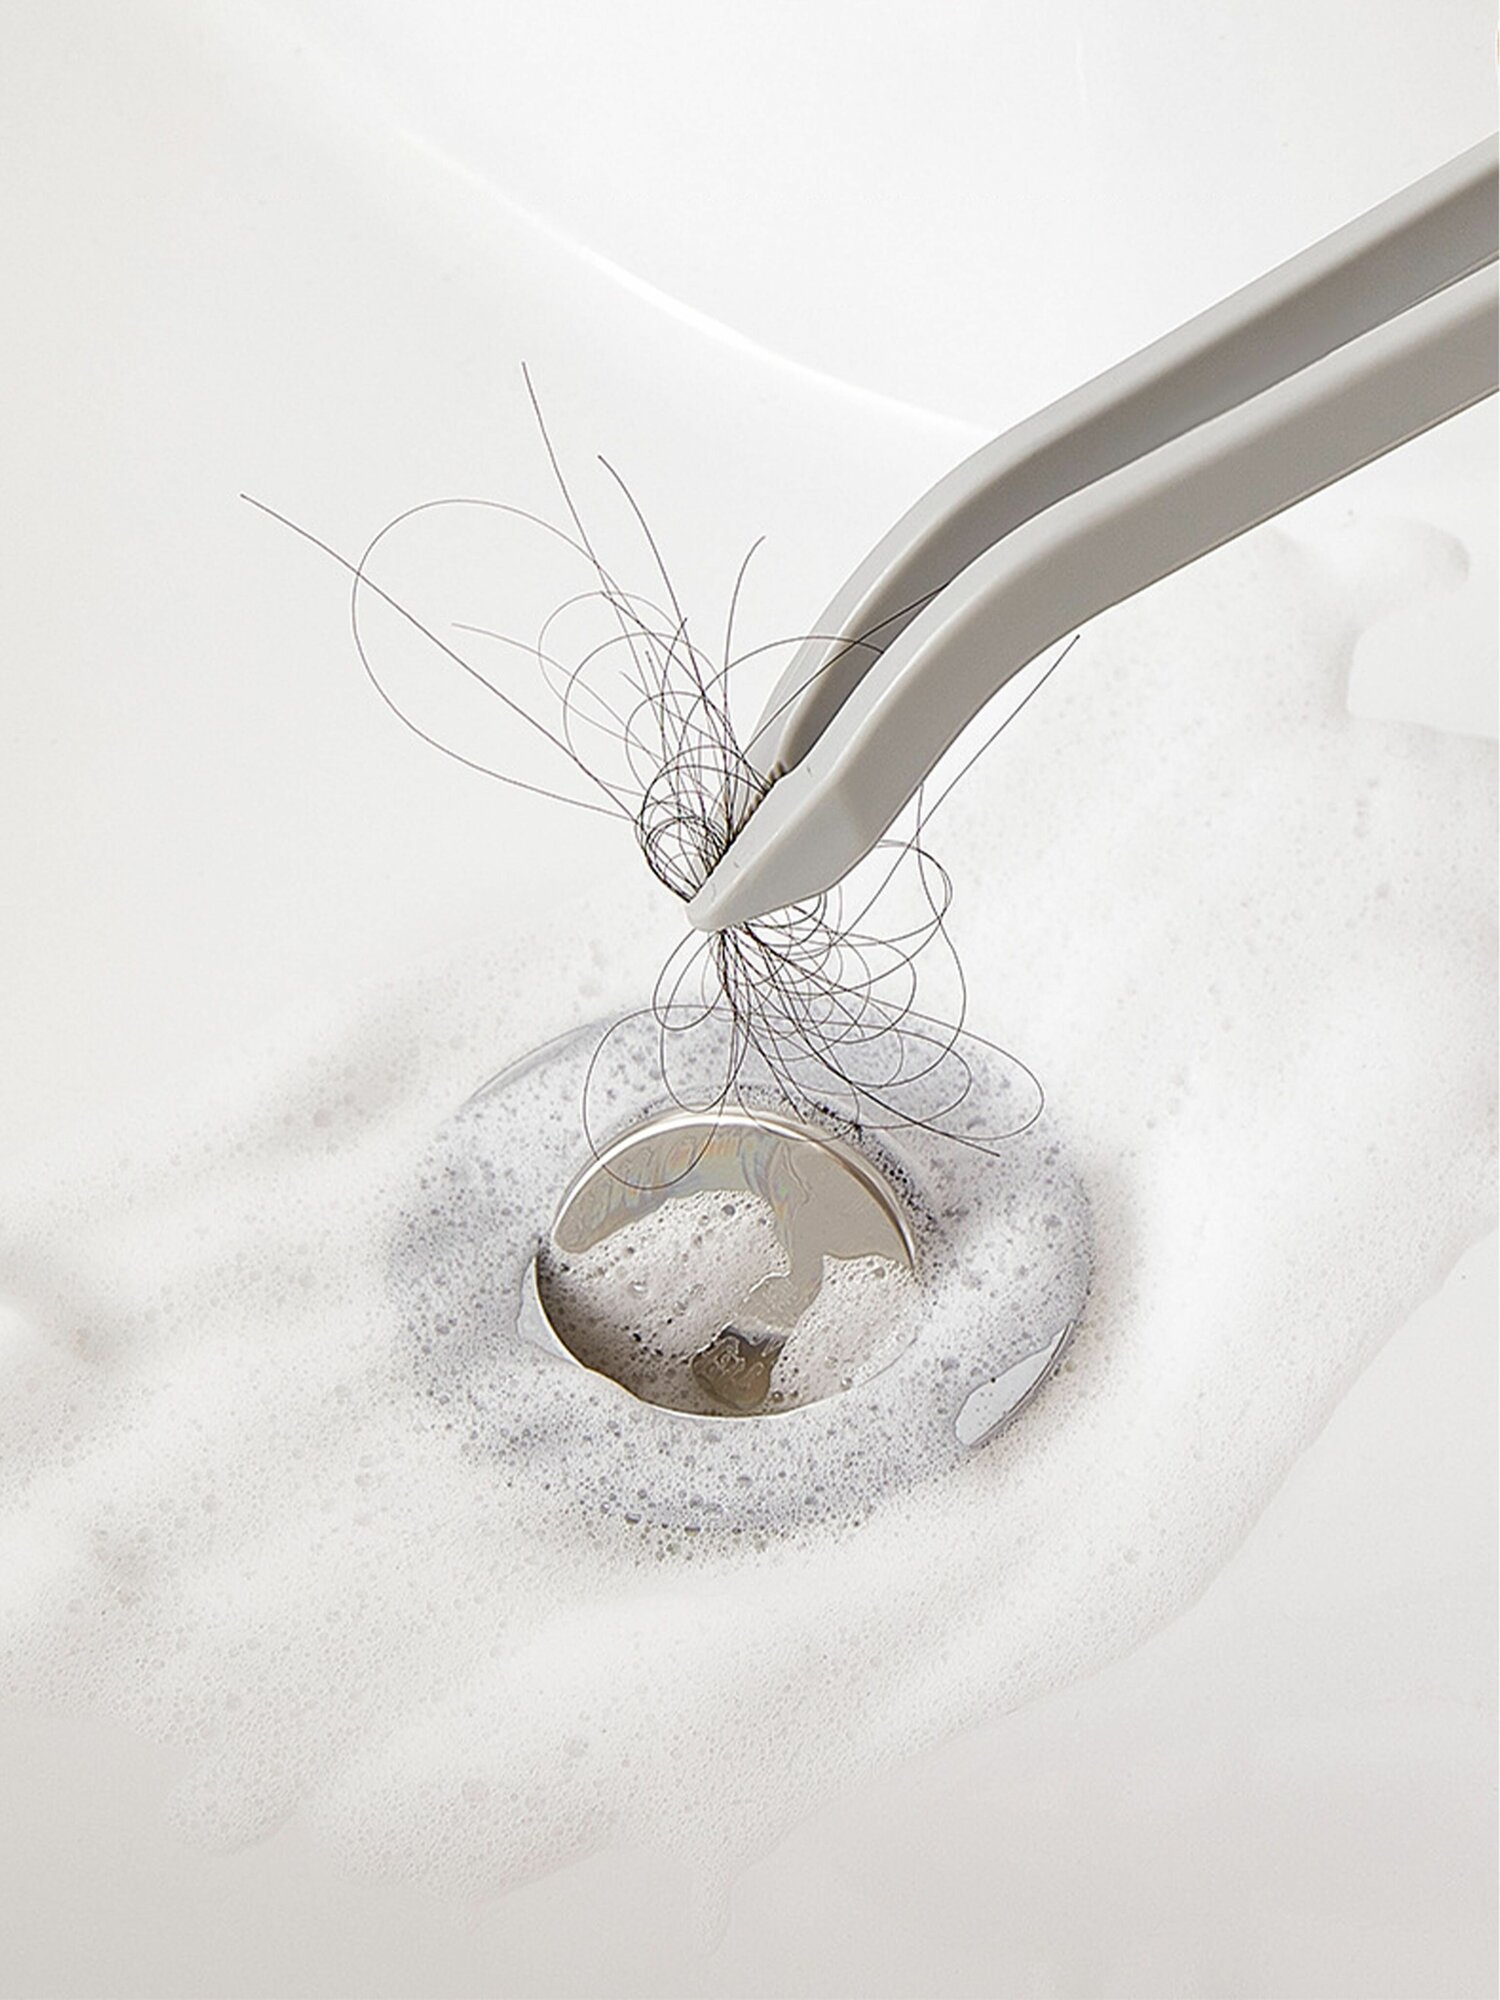 Щетка с пинцетом для уборки / Щетка для мытья раковины, ванной - фотография № 6